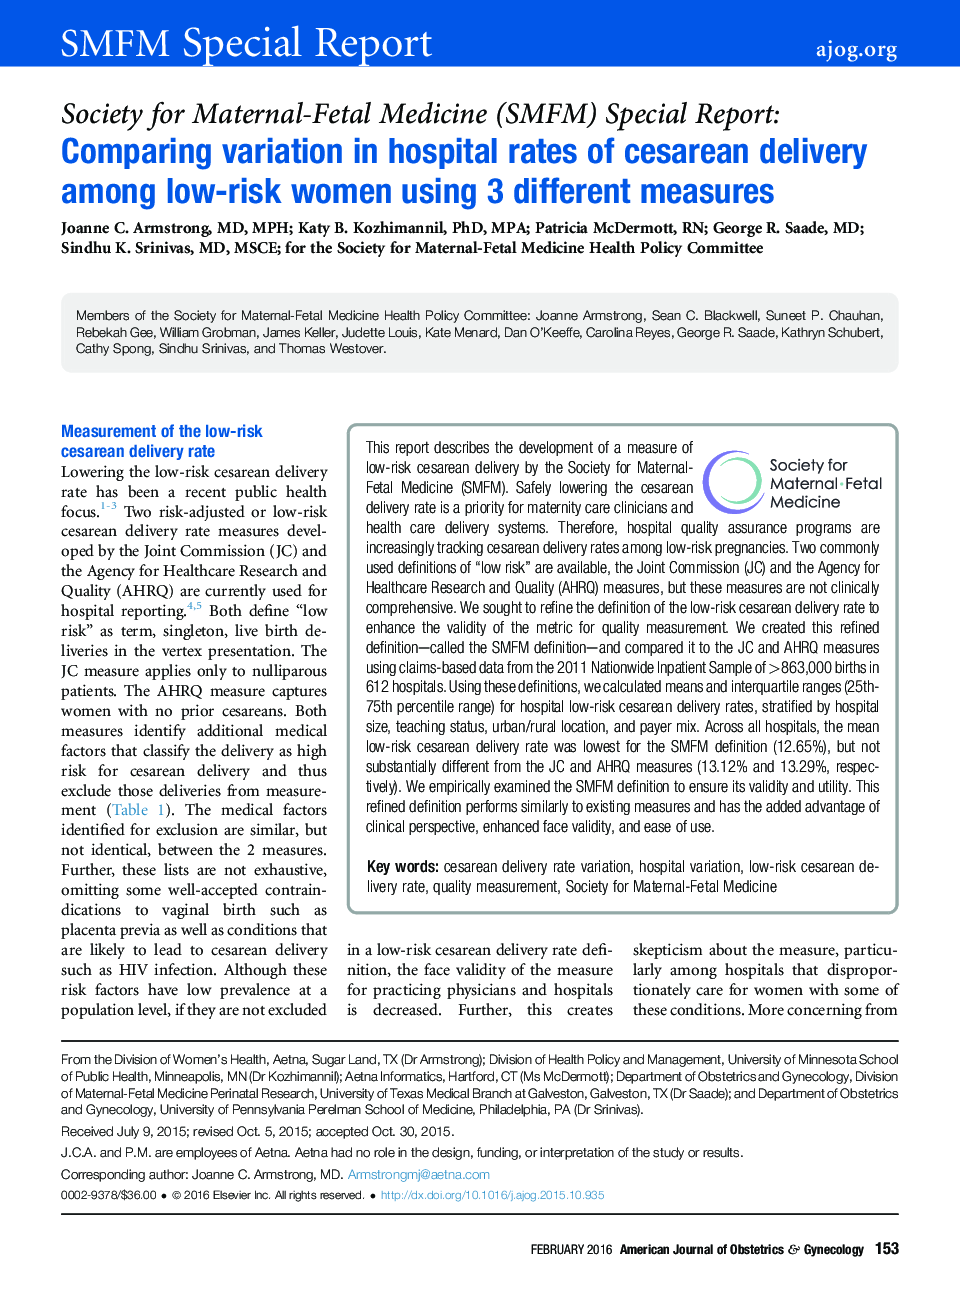 مقایسه تغییر در میزان شیوع سزارین در زنان کم خطر با استفاده از 3 روش مختلف 